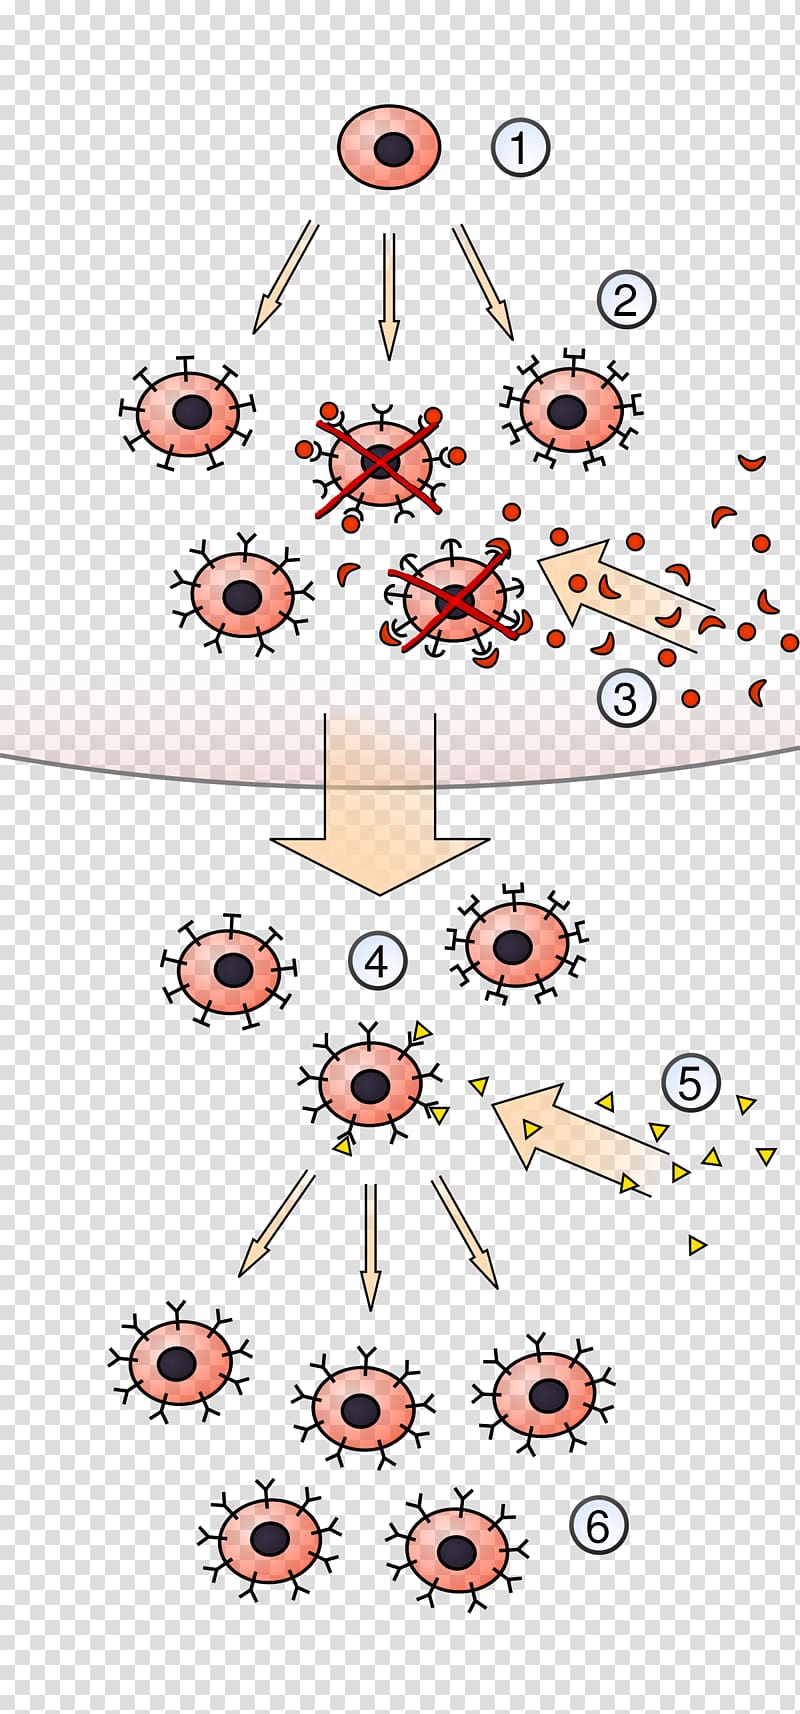 Clonal selection algorithm Lymphocyte Antigen Immune system, hematopoietic stem cells transparent background PNG clipart